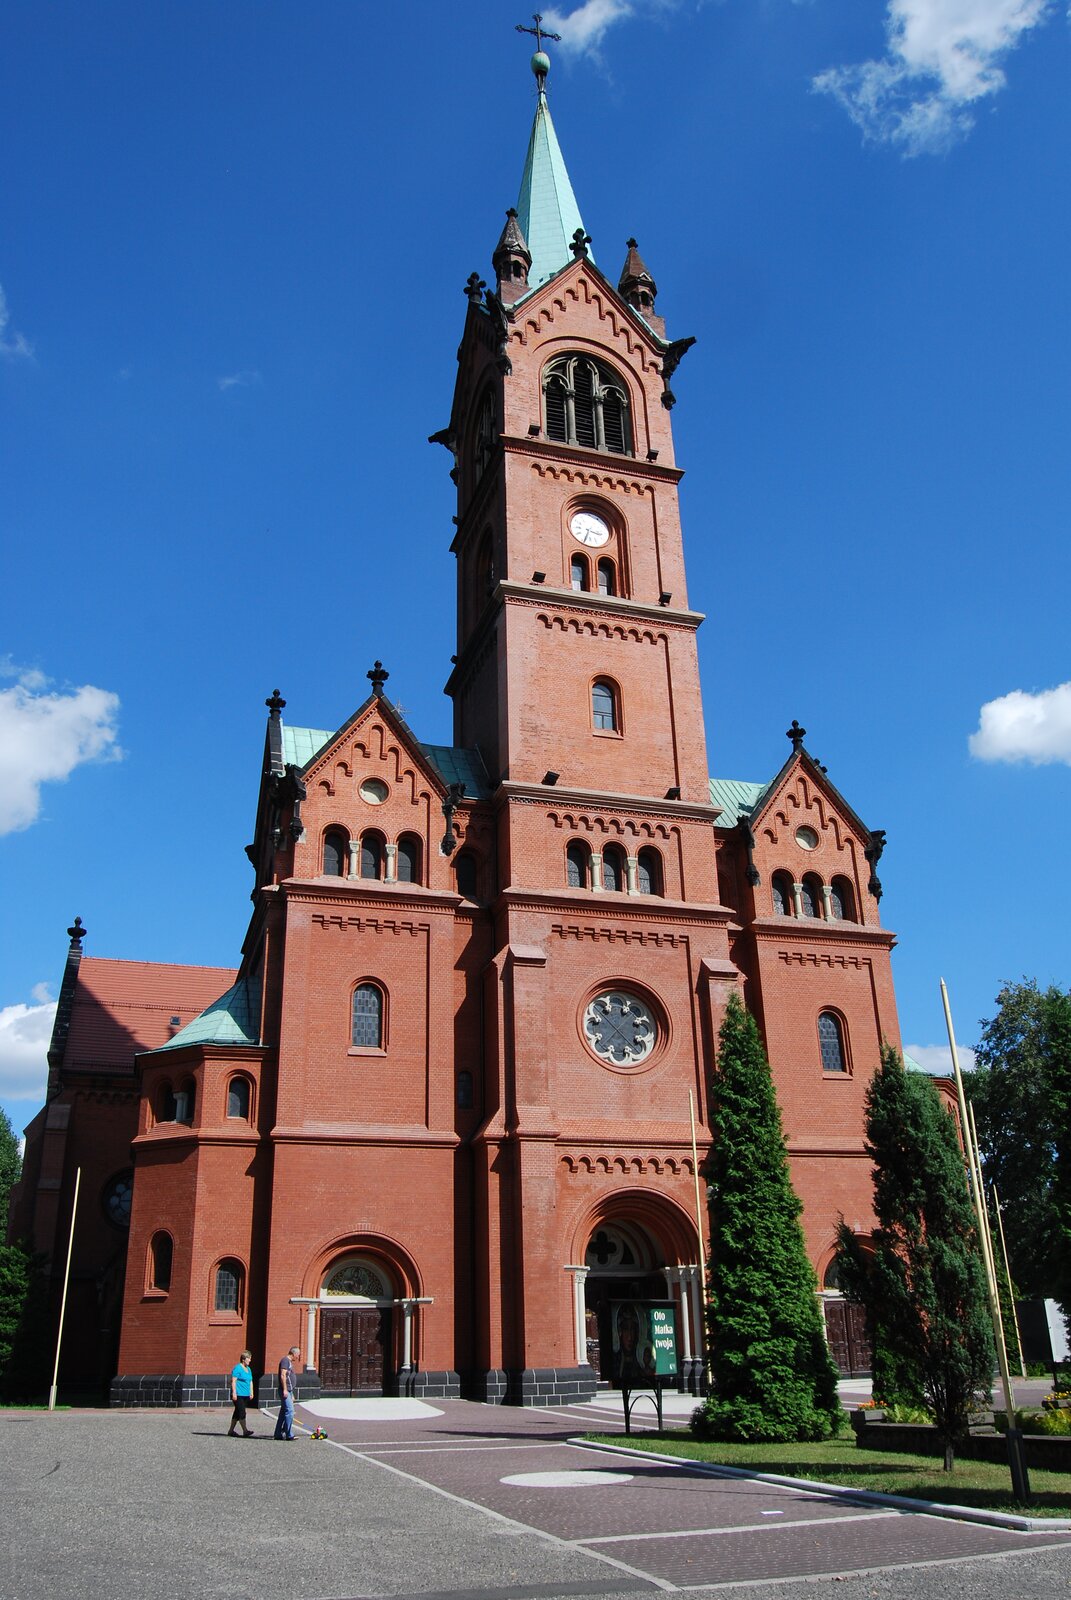 Neoromański kościół św. Anny, wzniesiony 1897-1900 Źródło: KristofferS, Neoromański kościół św. Anny, wzniesiony 1897-1900, 2012, licencja: CC BY-SA 3.0.